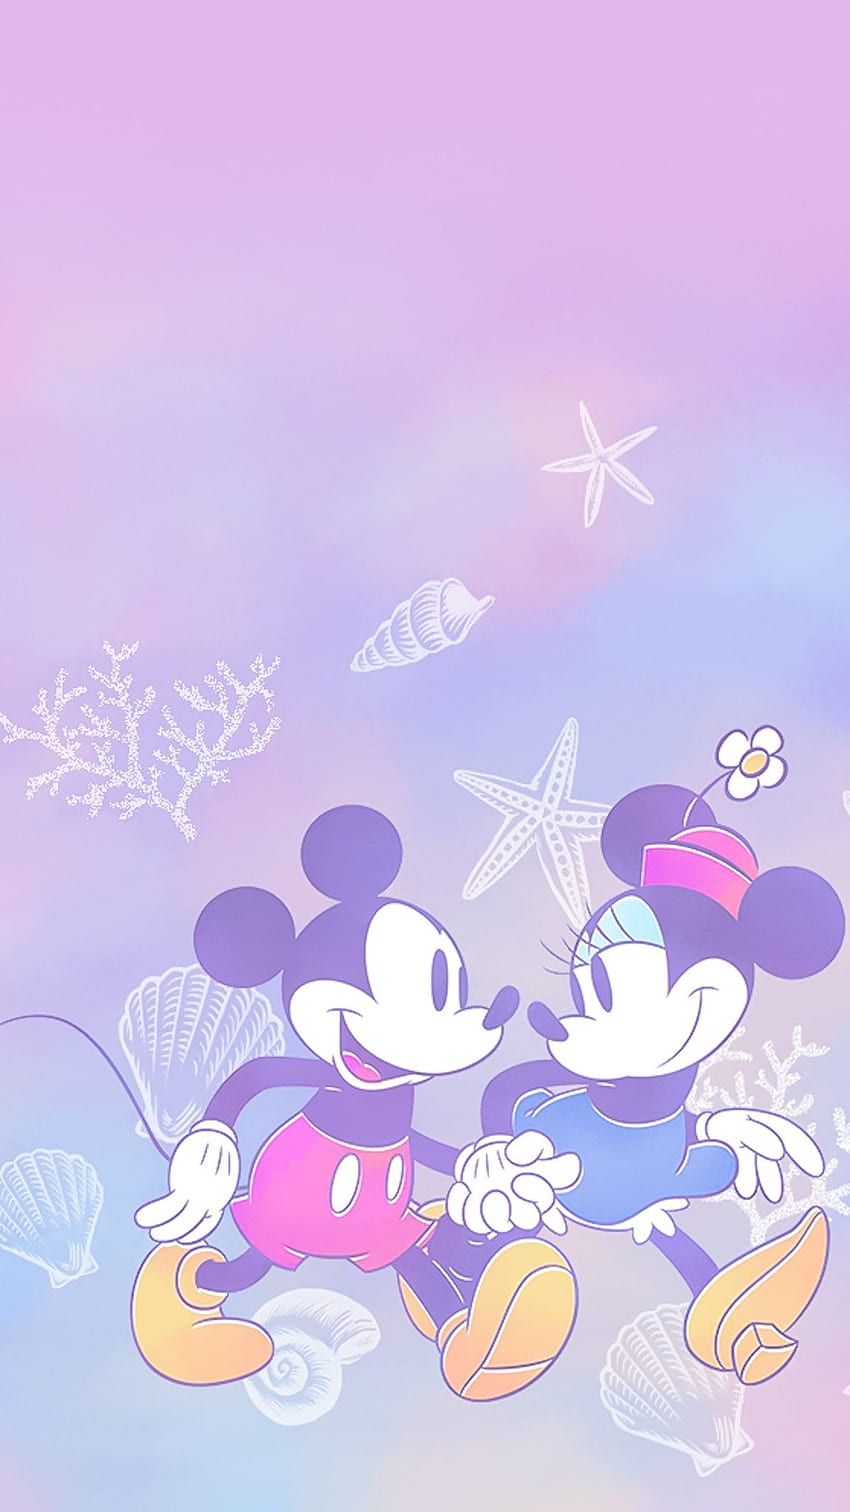 Diana GN auf Micky & Minnie Maus BG. Micky Maus, Disney-Figuren, iPhone Hintergrund Disney, Purple Minnie Mouse HD-Handy-Hintergrundbild